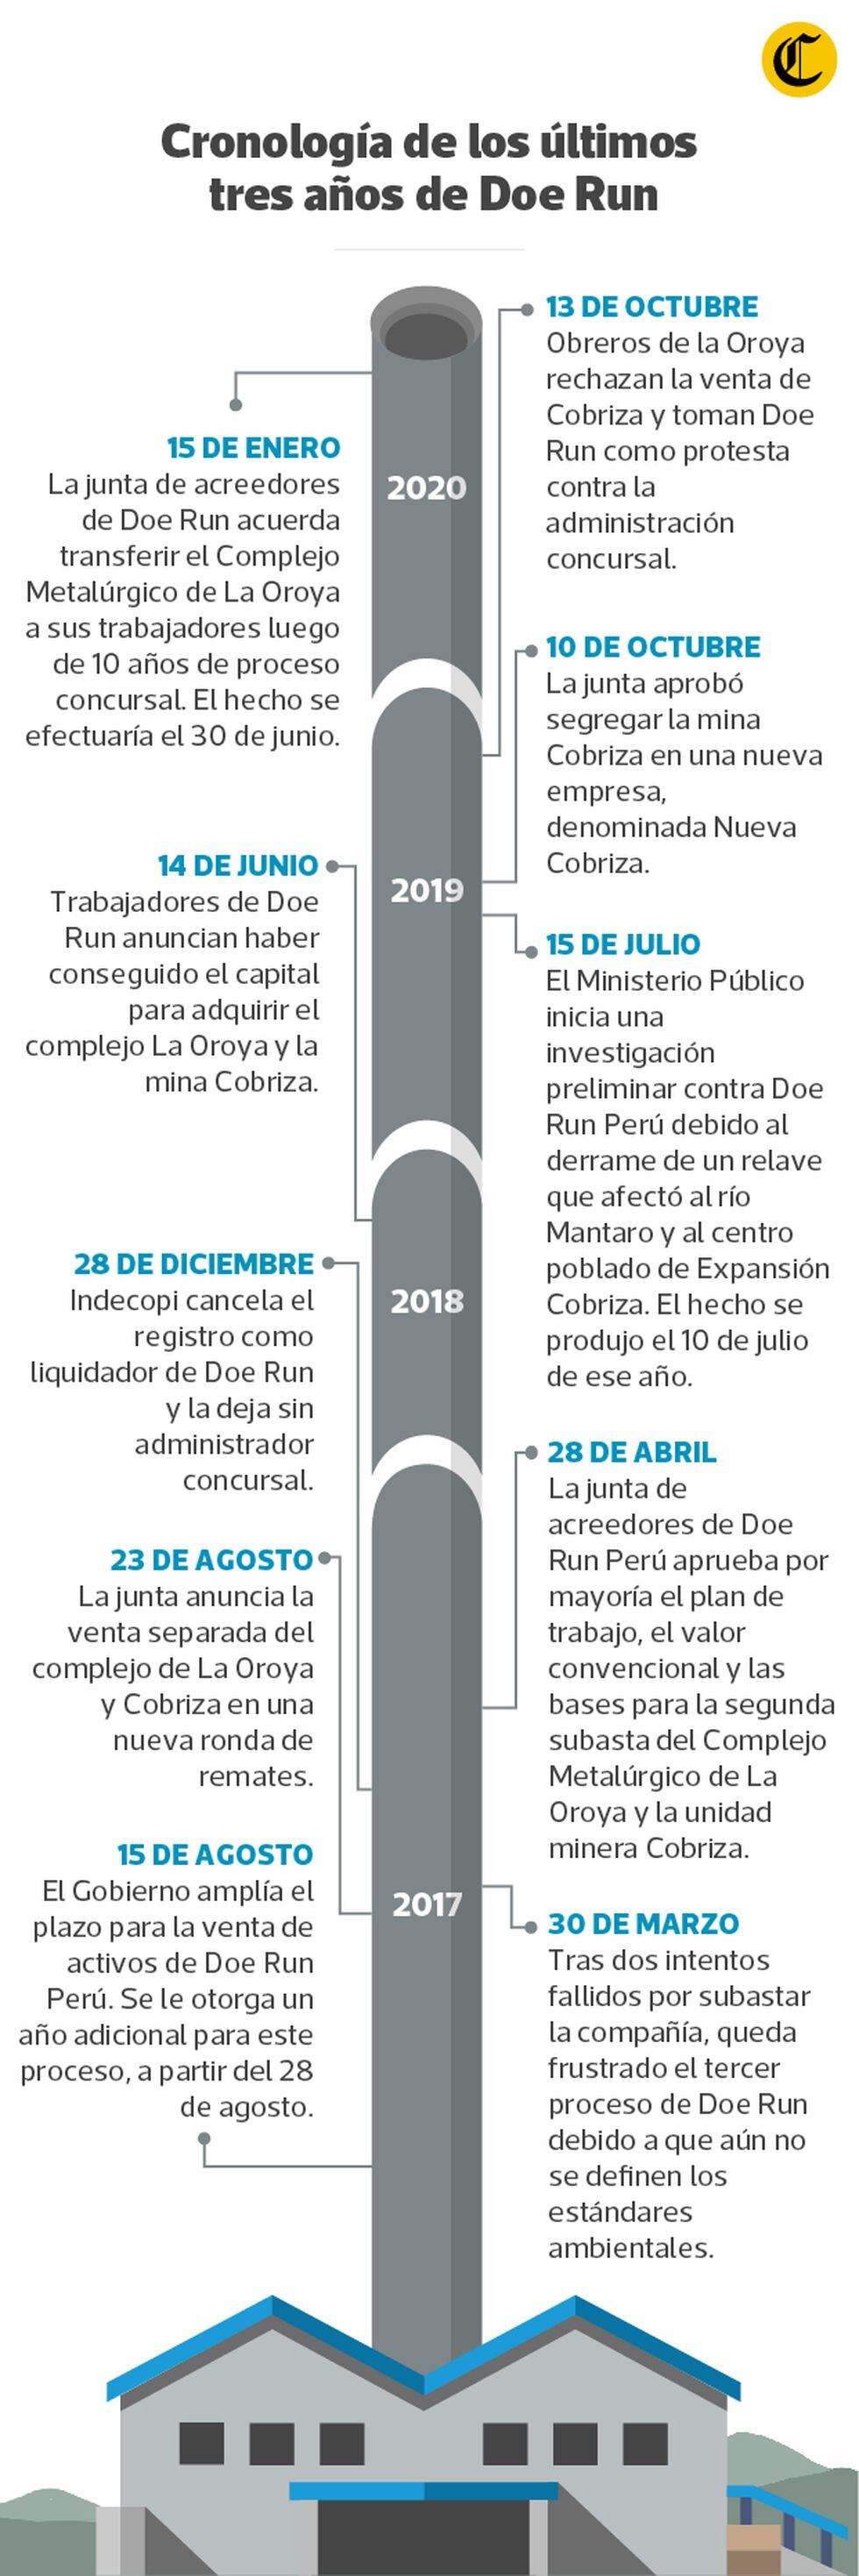 Esta es la cronología de Doe Run en los últimos tres años. (Elaboración: EC)